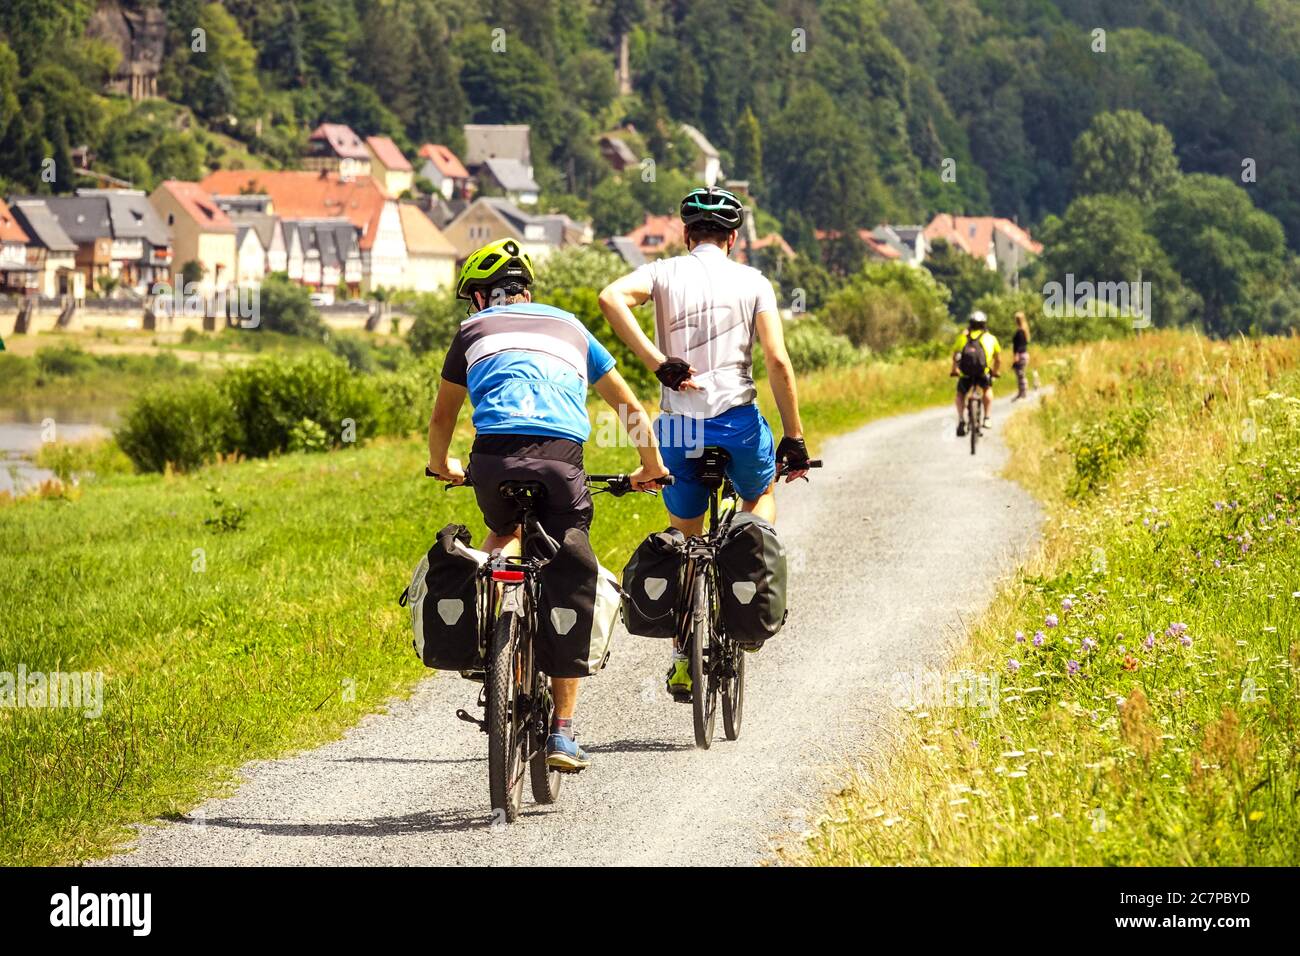 Cyclistes sur l'Elberadweg, une piste cyclable qui traverse une vallée le long de l'Elbe, Suisse saxonne Allemagne cyclistes, piste cyclable de l'Elbe Banque D'Images